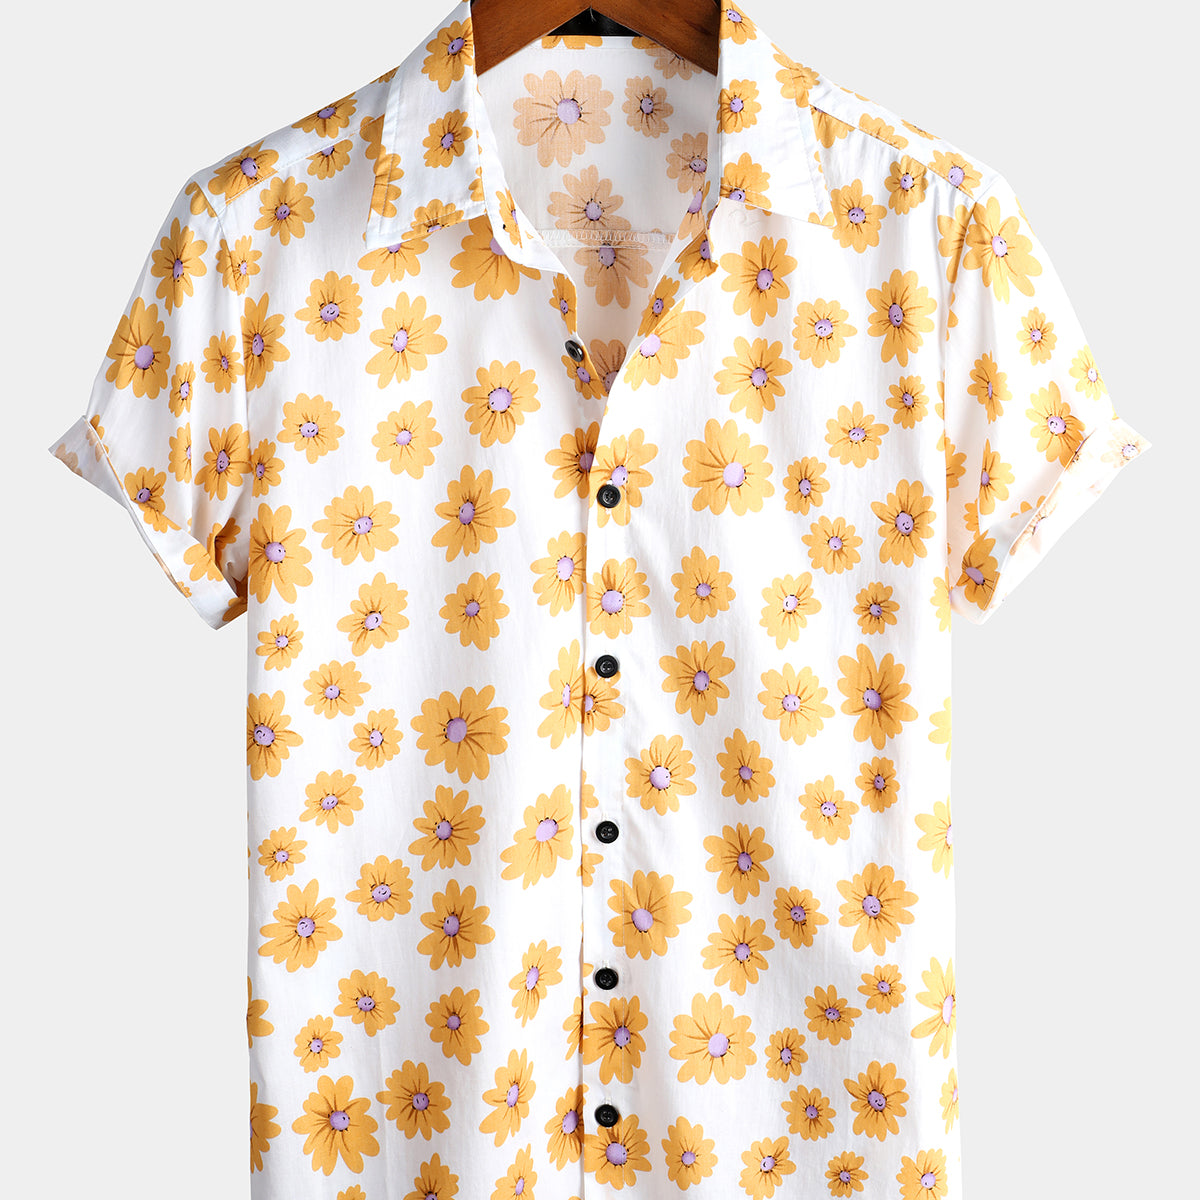 Men's Pink Floral Daisy Print Tropical Hawaiian Cotton Flower Shirt